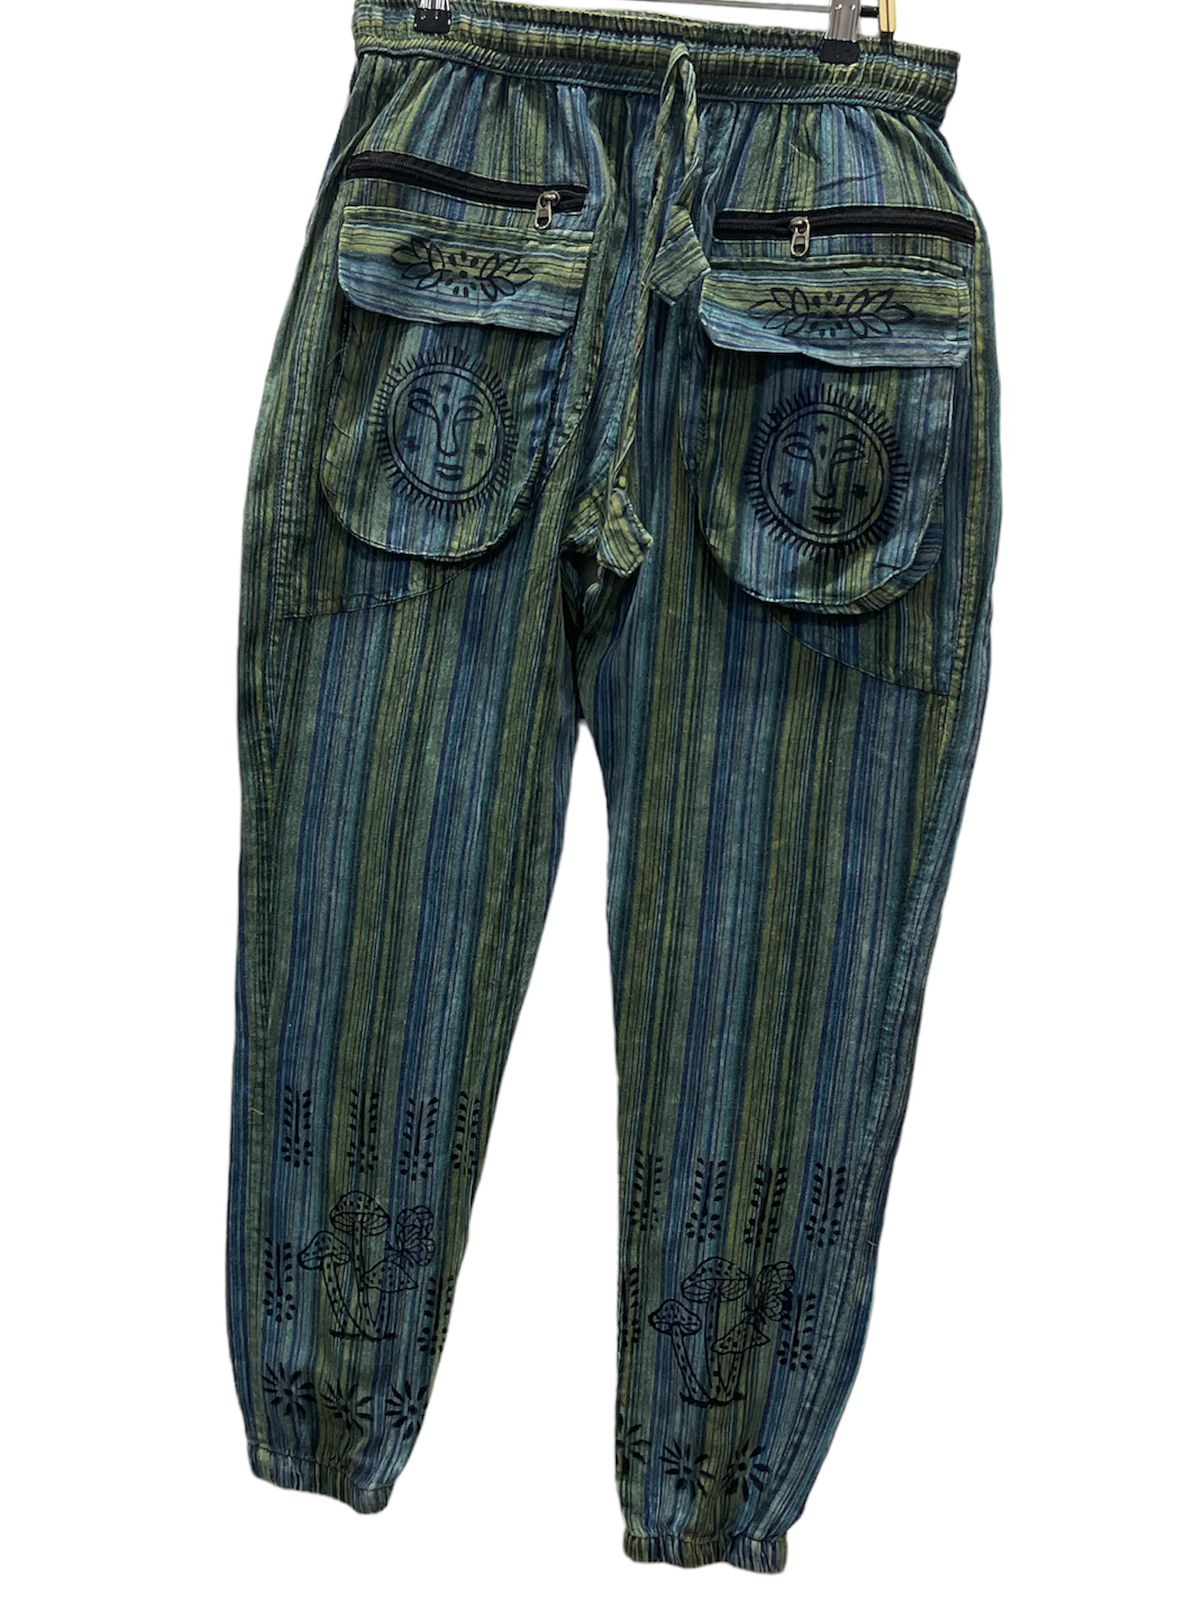 Pants Stripes Blue Green-hotRAGS.com